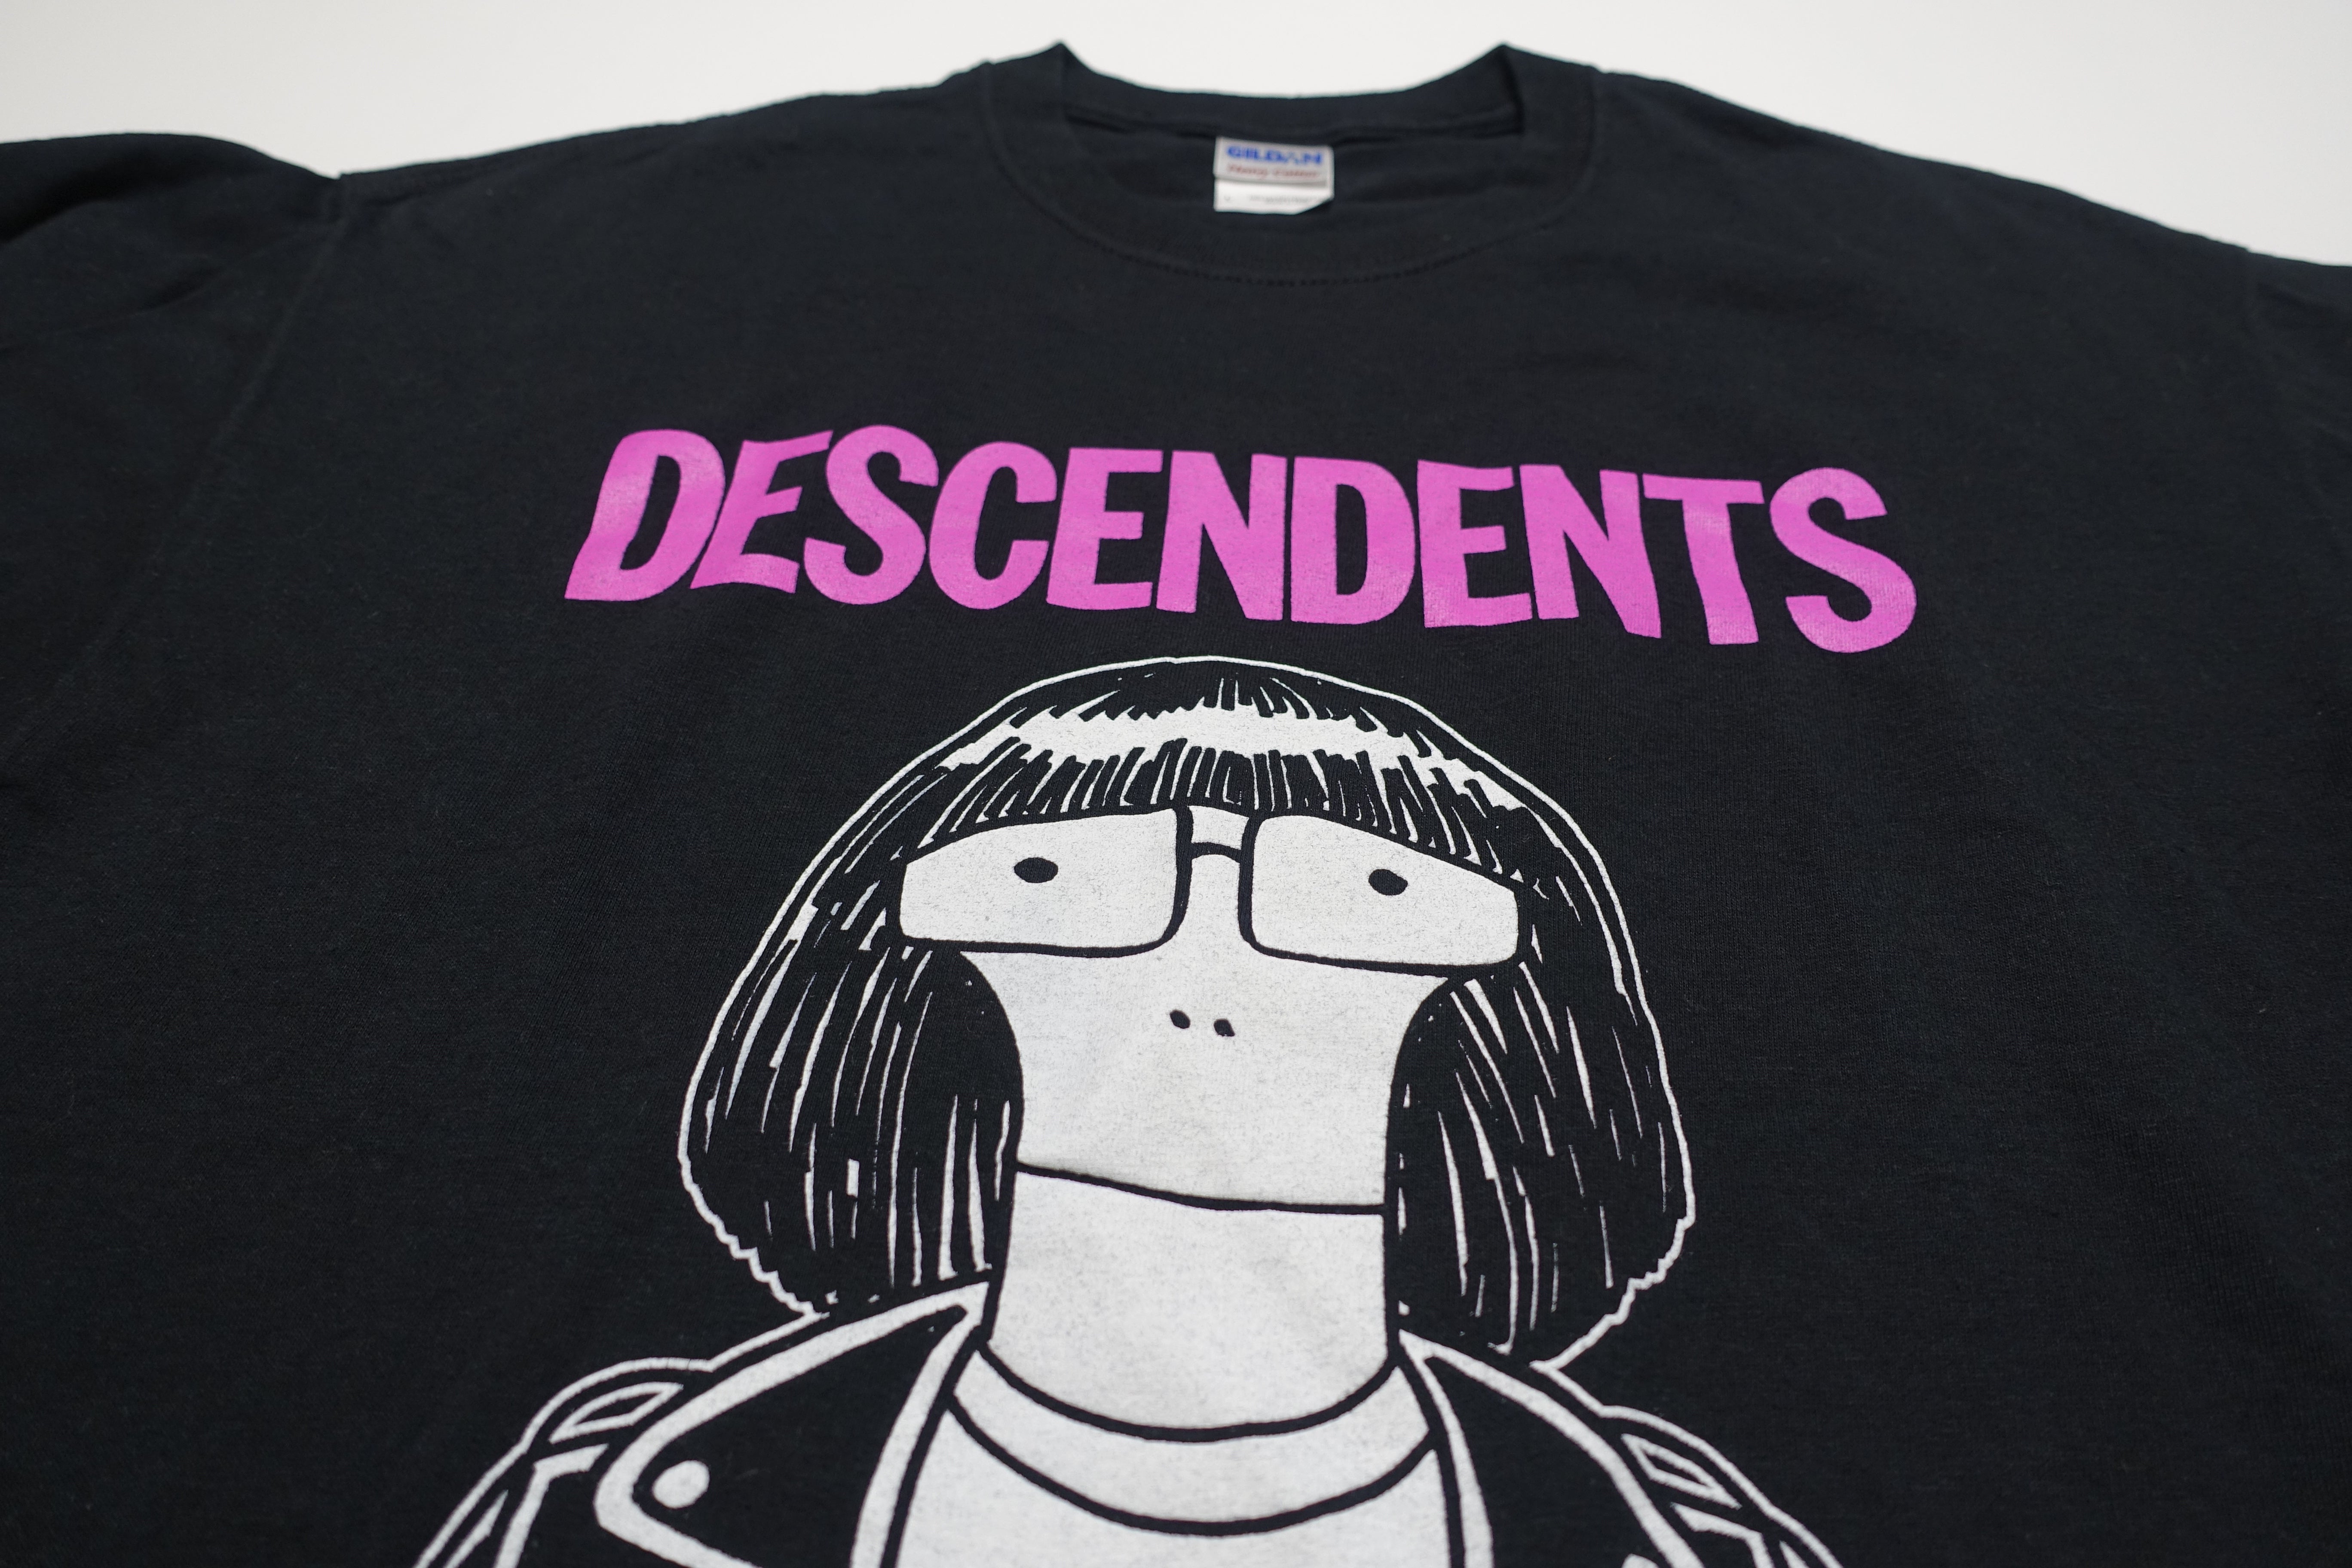 Descendents - New York Riot Fest 2012 Tour Shirt Size Large